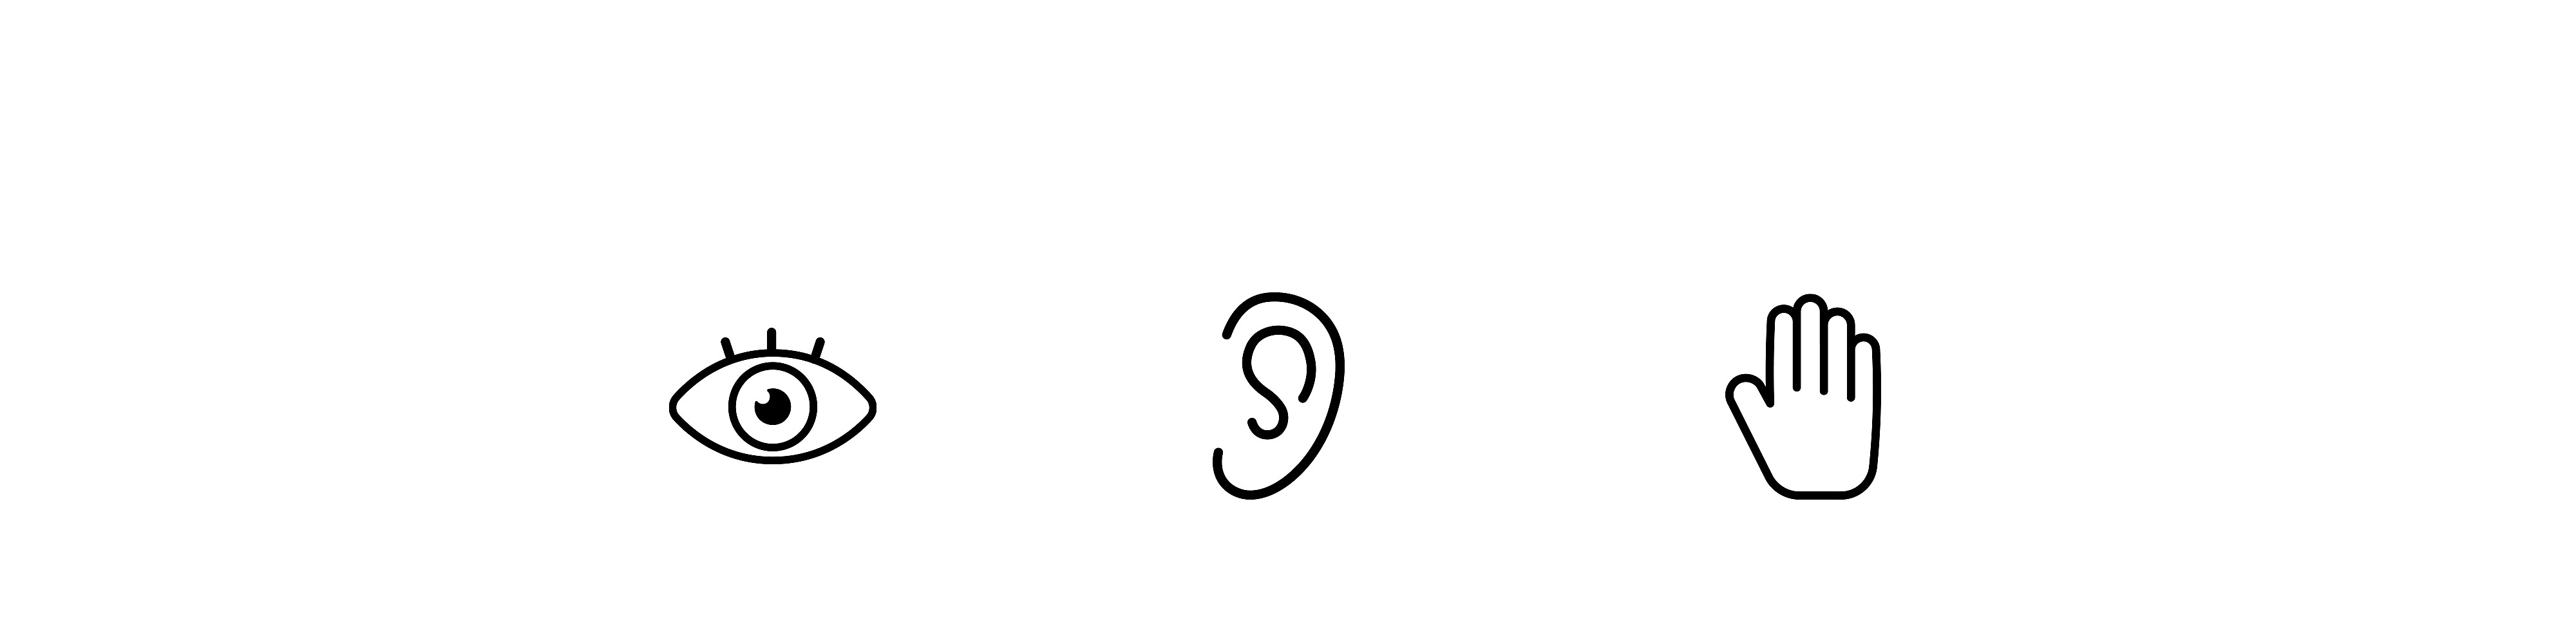 Tri ikony vedľa seba: vľavo je oko, v strede je ucho a vpravo je ruka